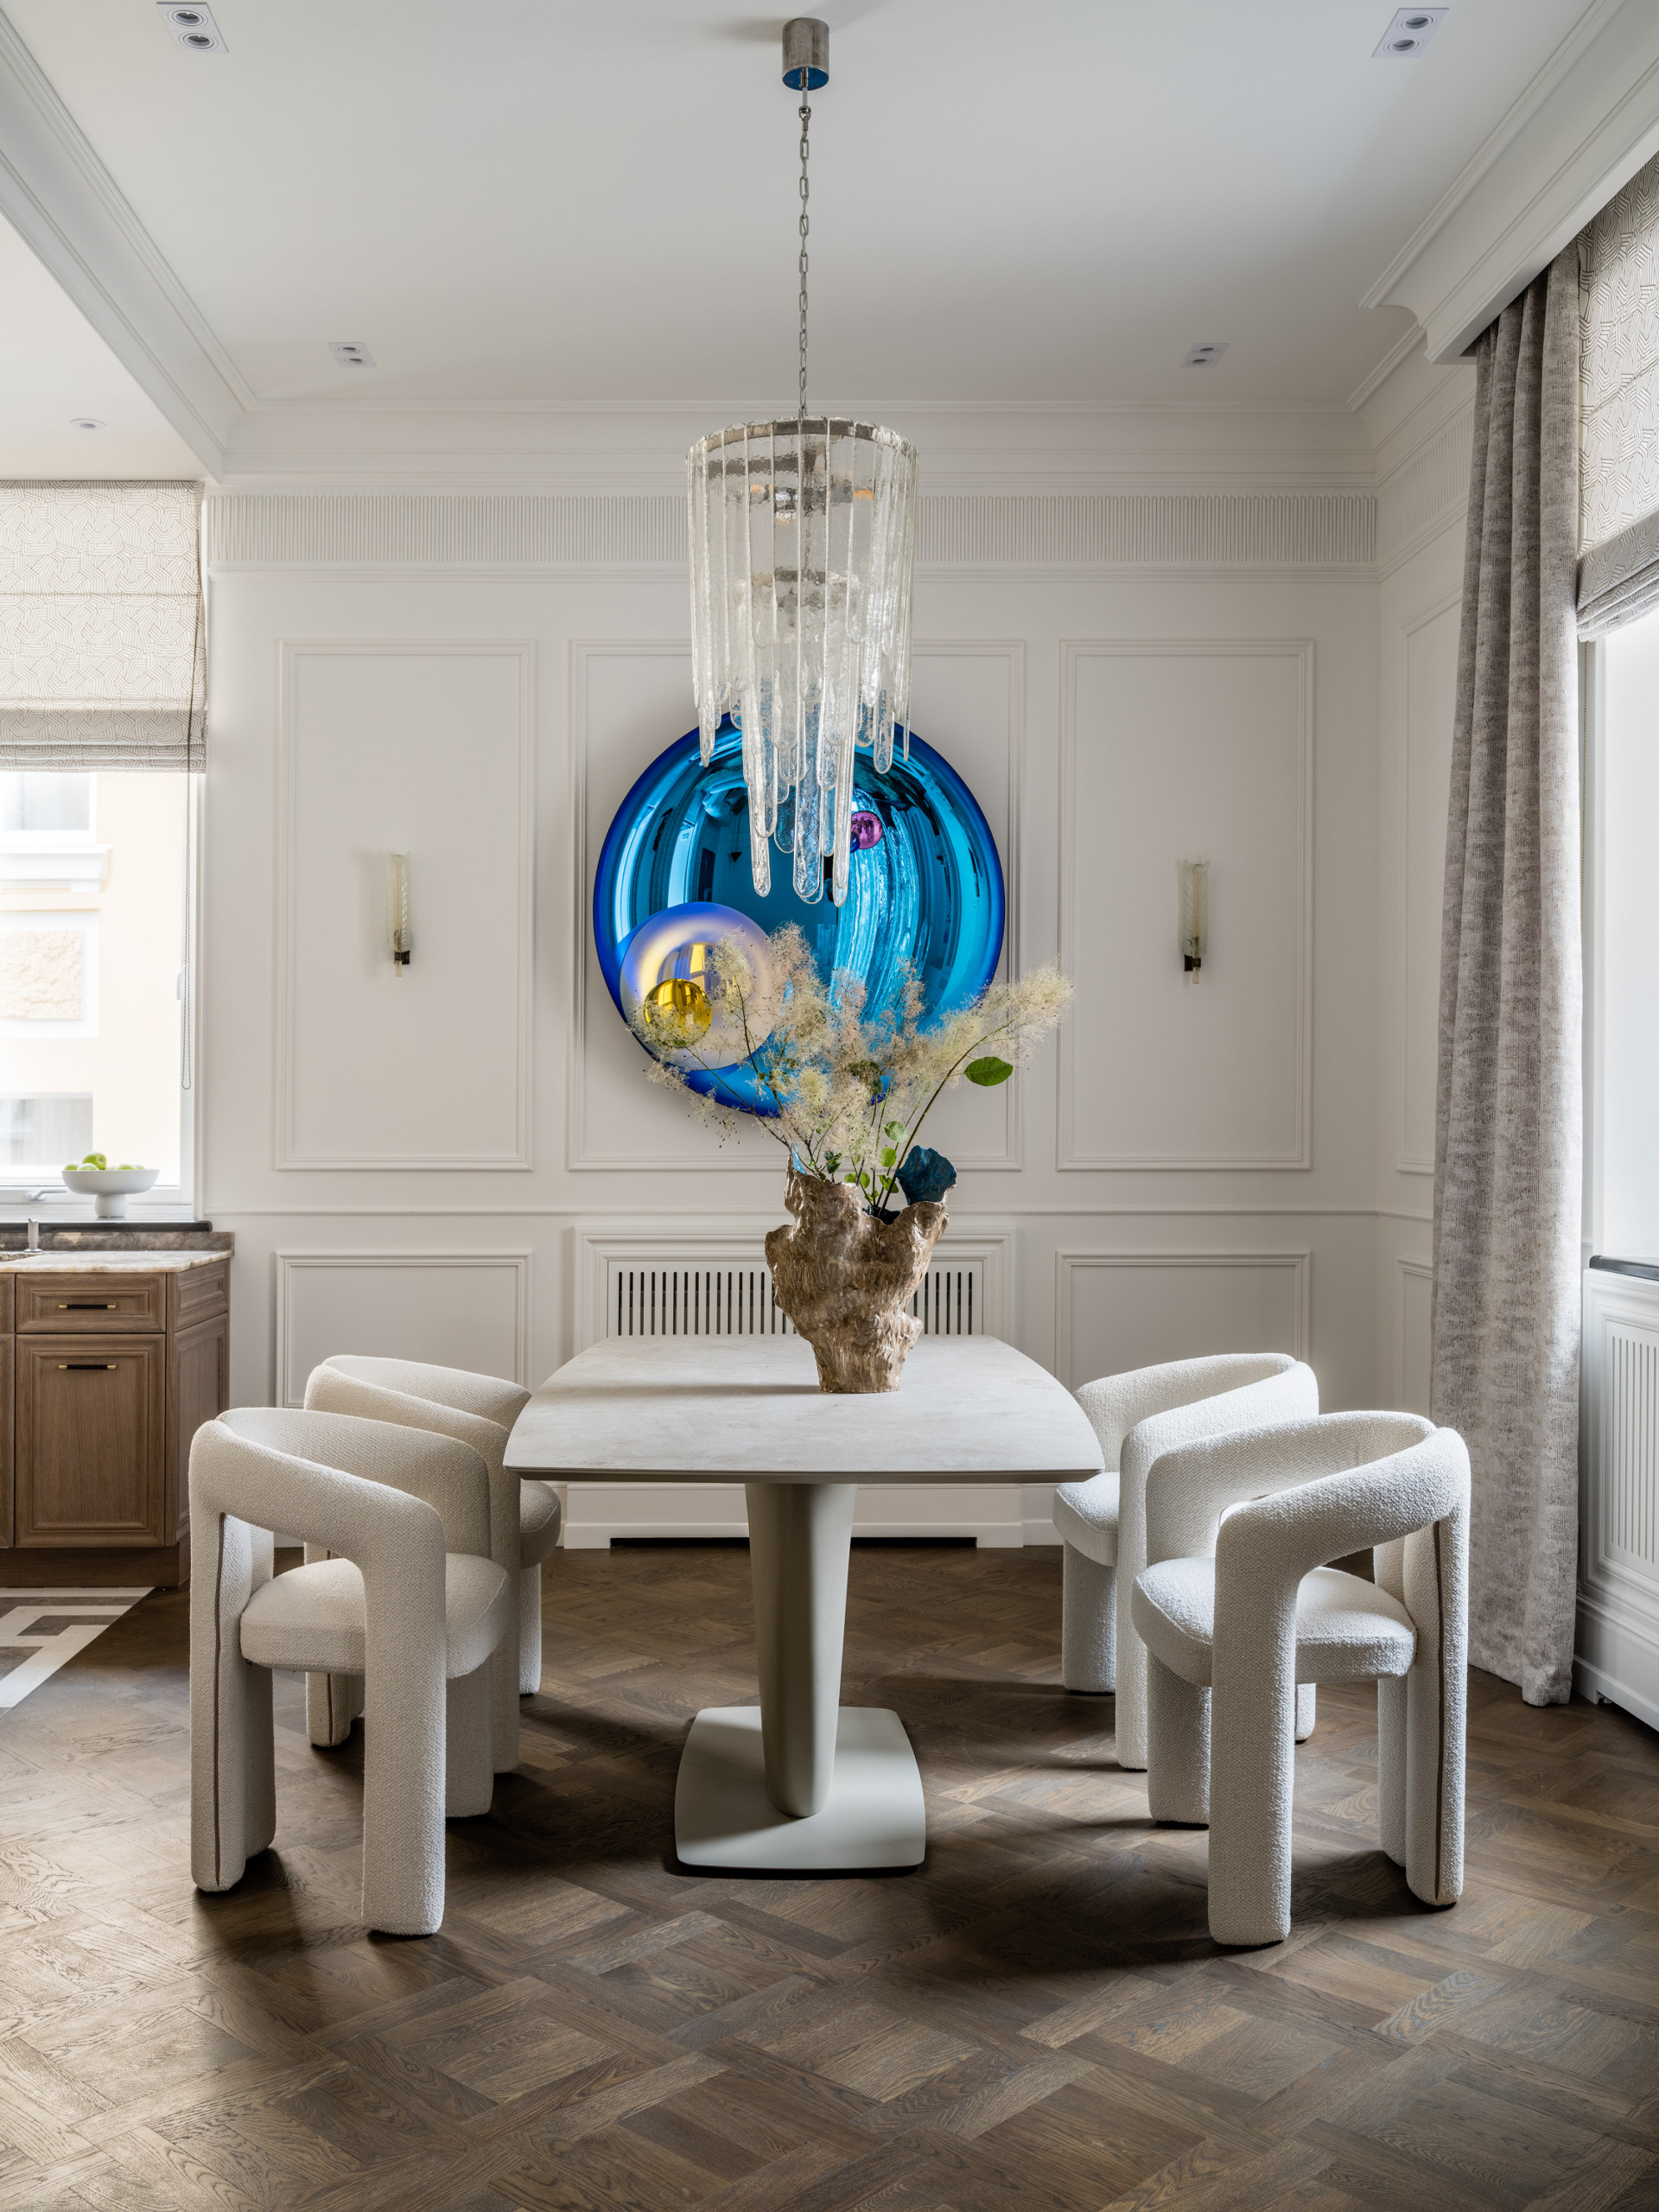 Дизайн столовой в частном доме: фото лучших идей интерьера | Interior classic, Home, Home decor